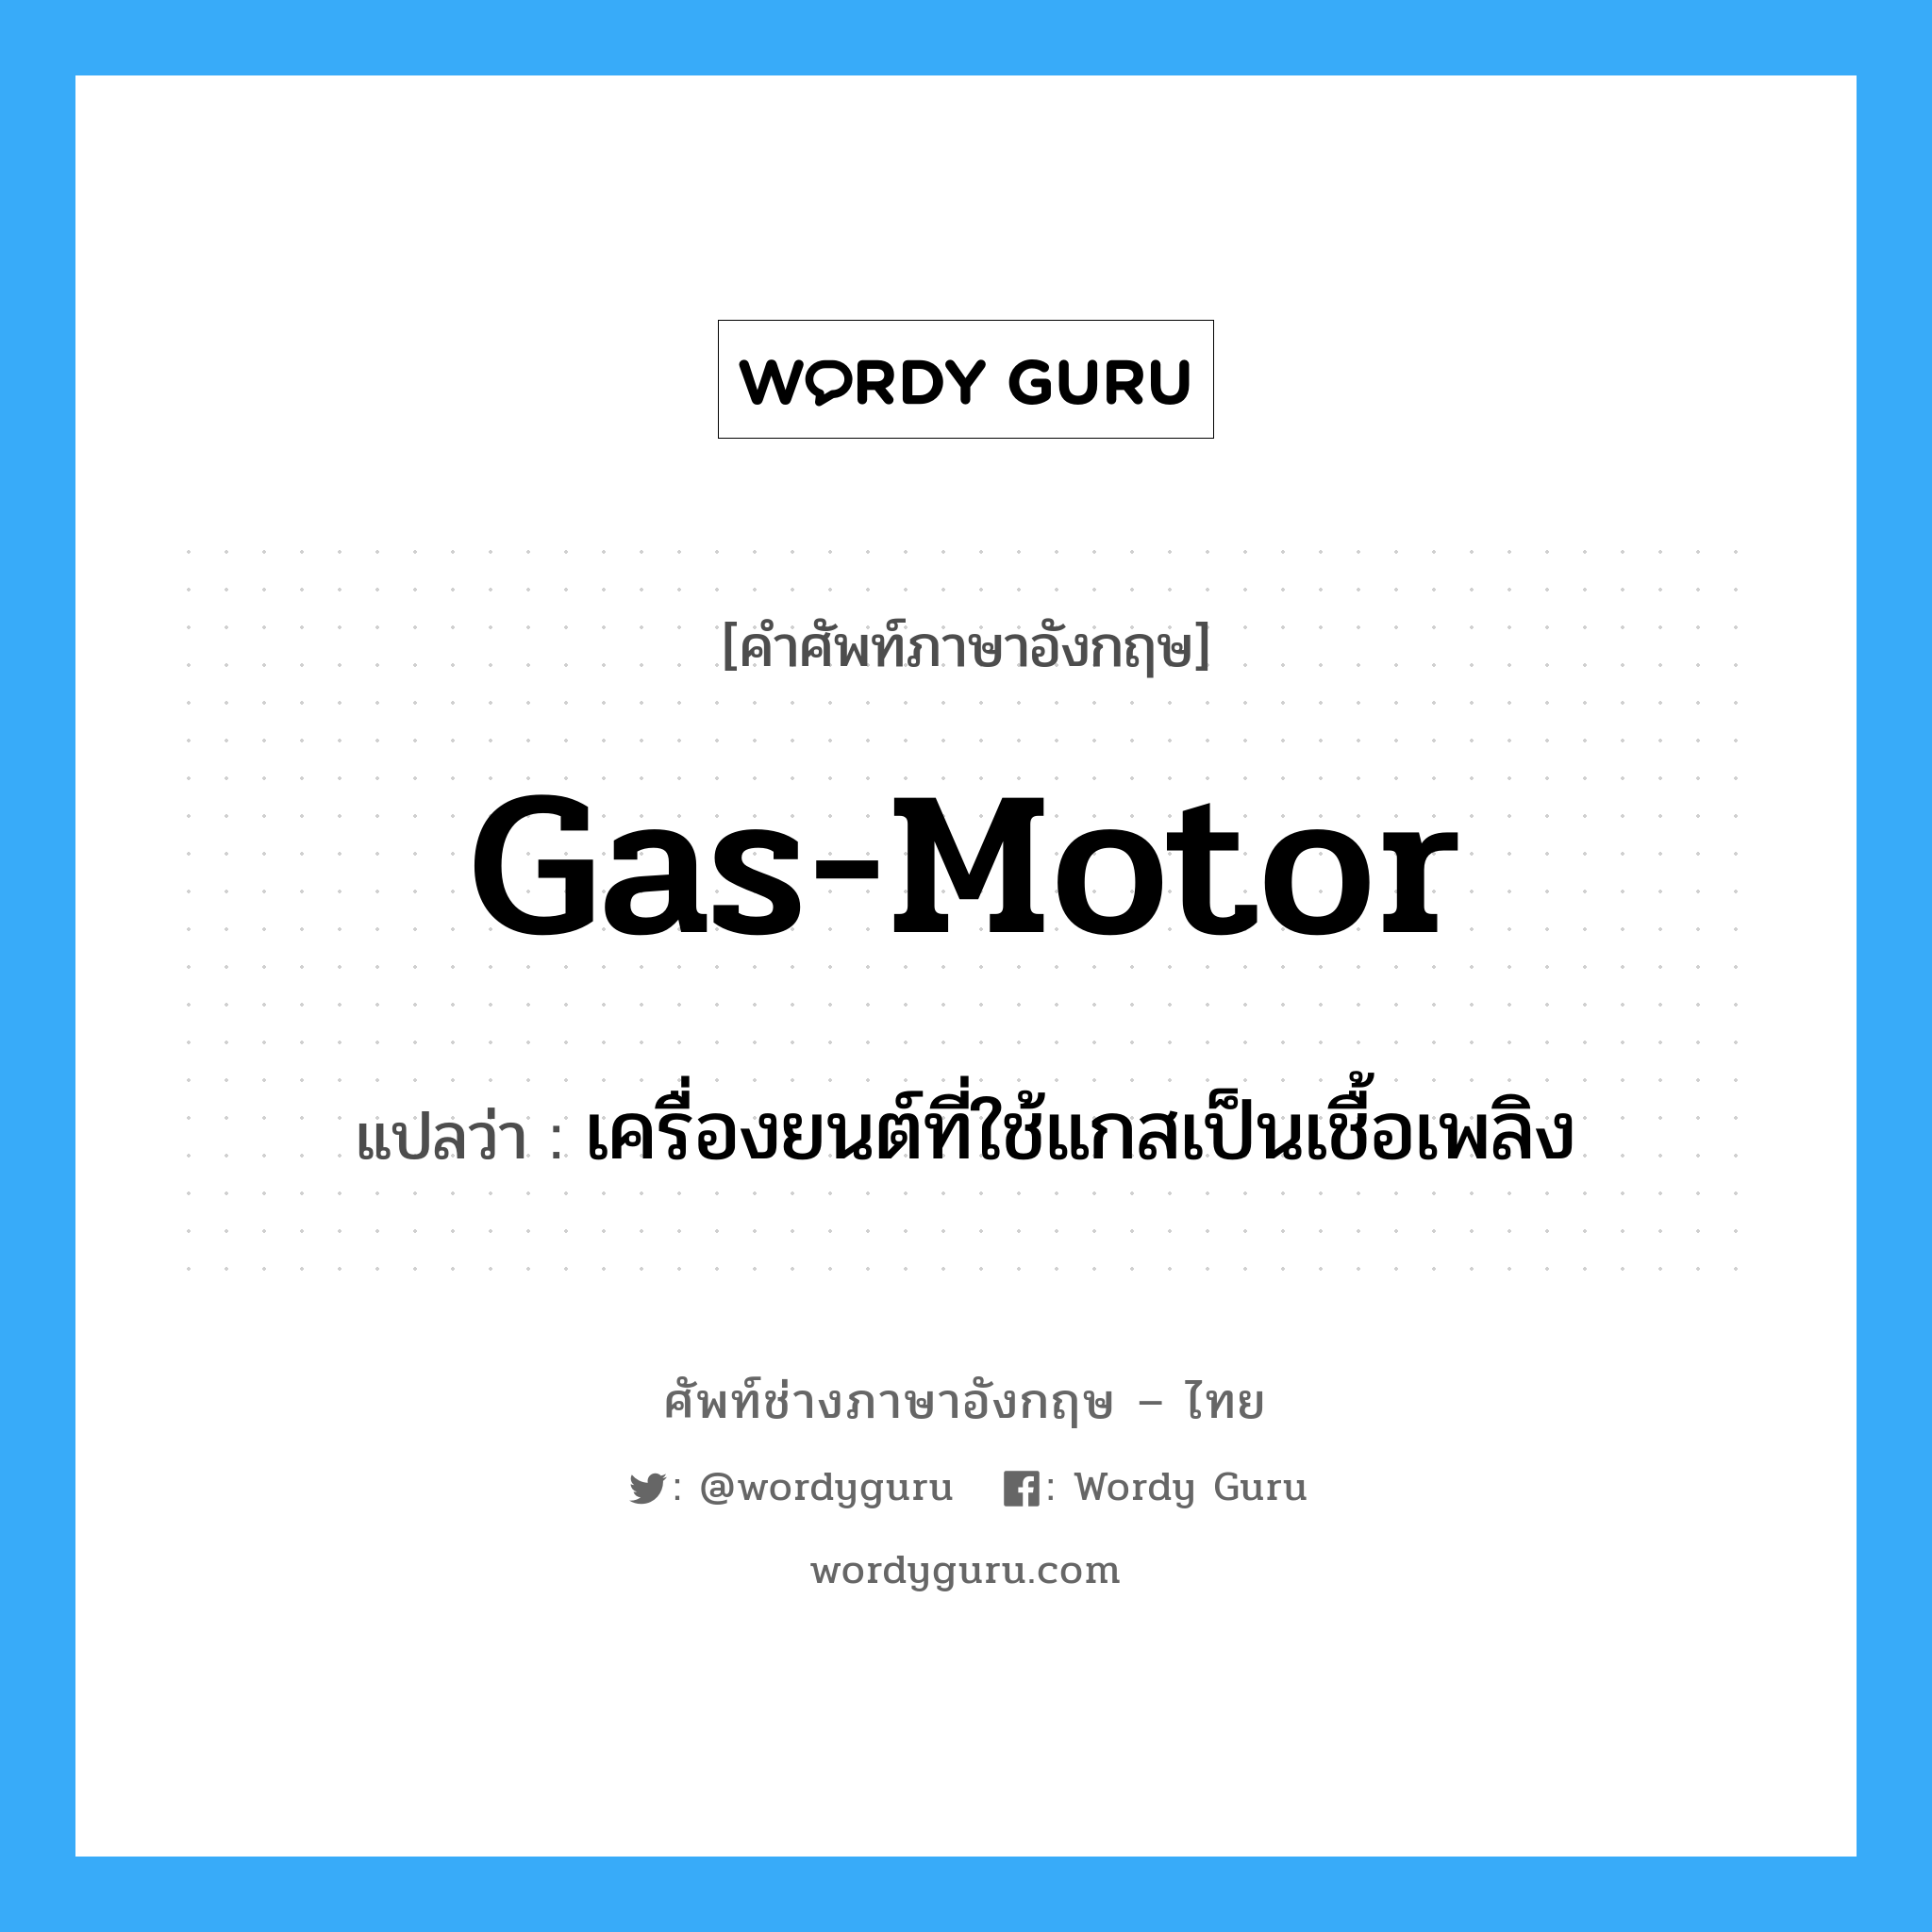 gas-motor แปลว่า?, คำศัพท์ช่างภาษาอังกฤษ - ไทย gas-motor คำศัพท์ภาษาอังกฤษ gas-motor แปลว่า เครื่องยนต์ที่ใช้แกสเป็นเชื้อเพลิง